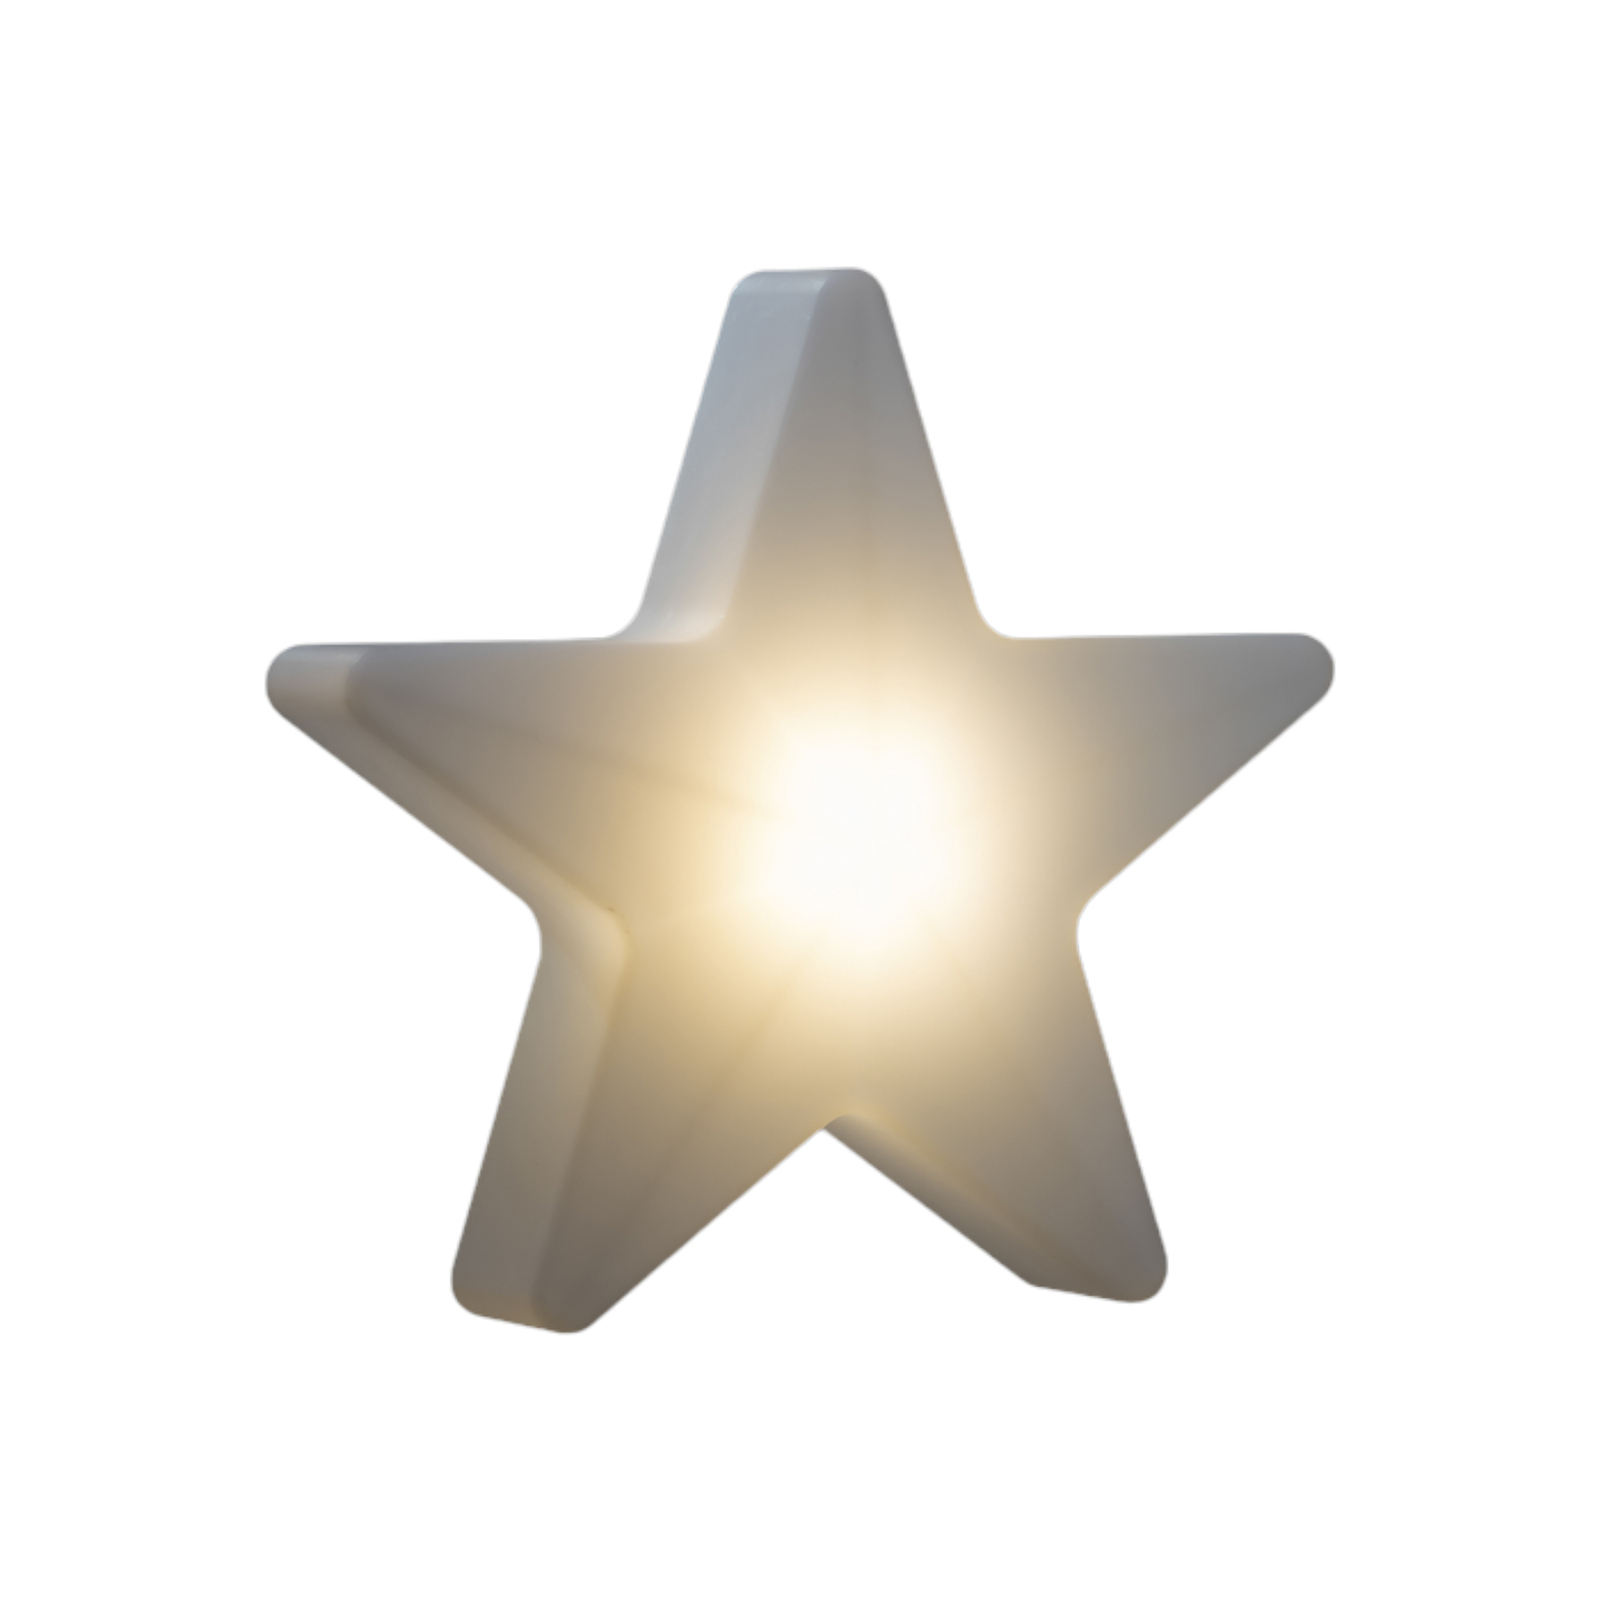 Sterntaler LED csillag IP44 fehér RGBW Ø 60 cm